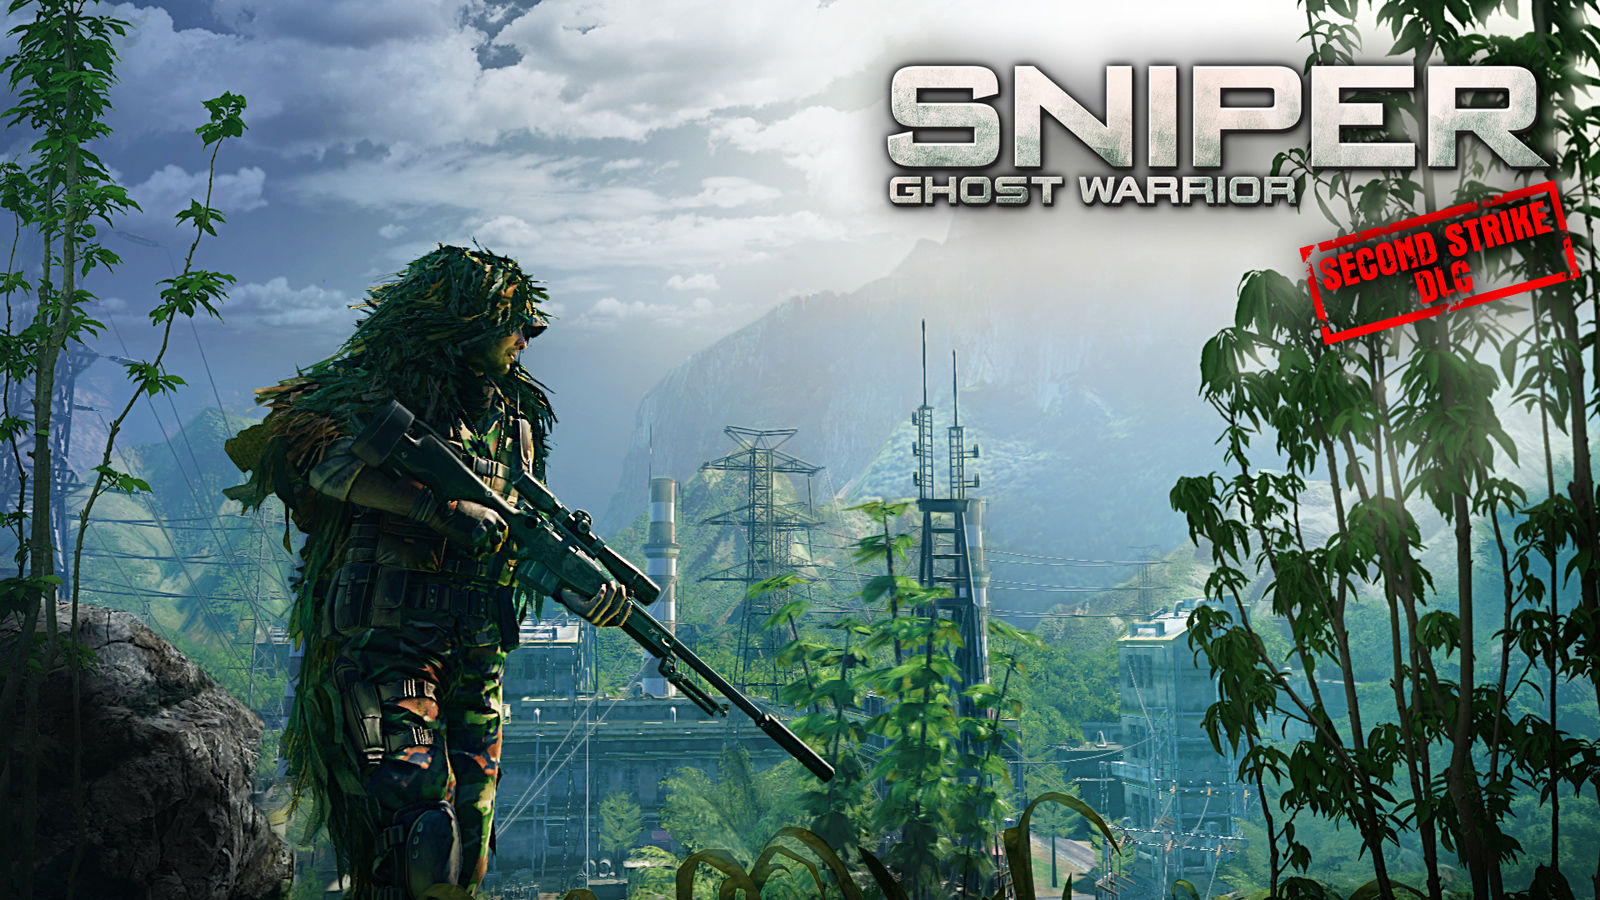 Sniper: Ghost Warrior - Second Strike on Steam